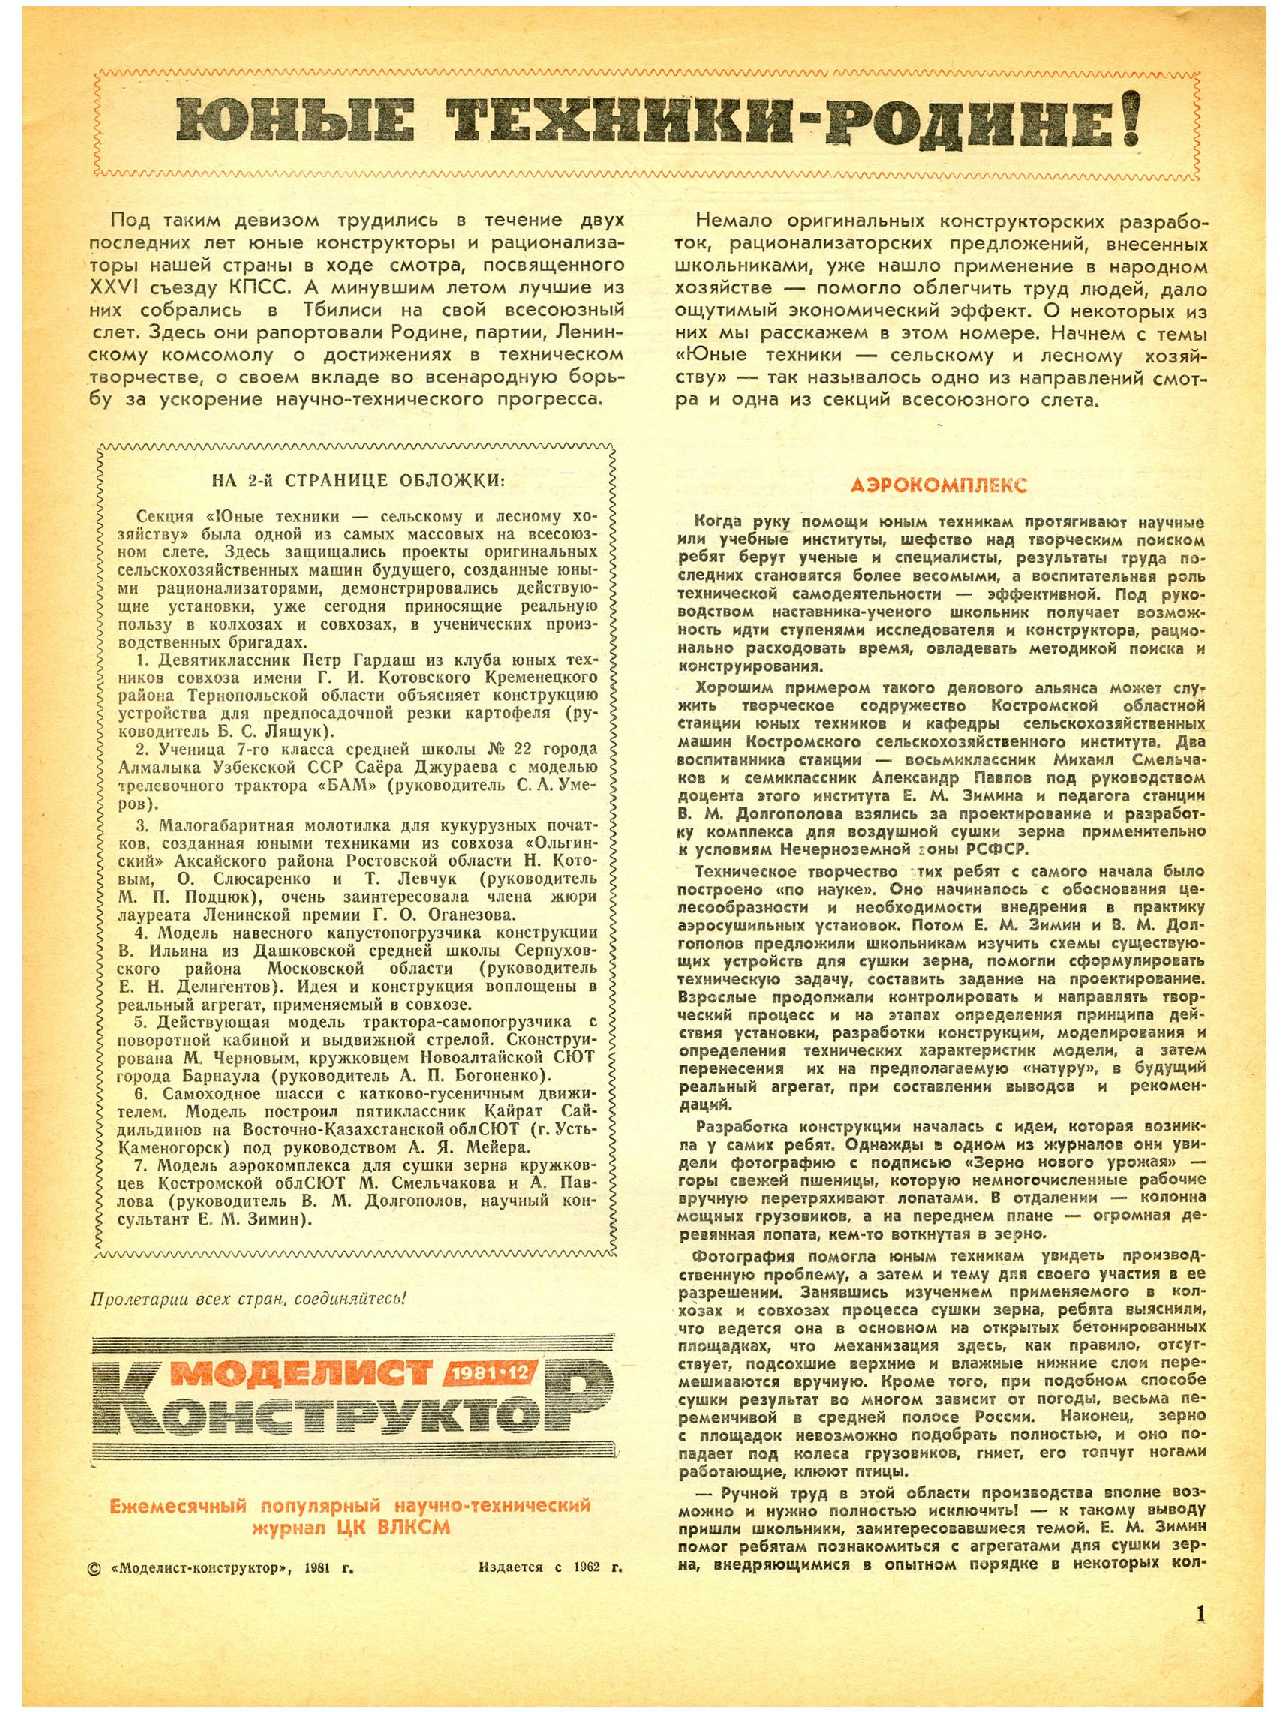 МК 12, 1981, 1 c.